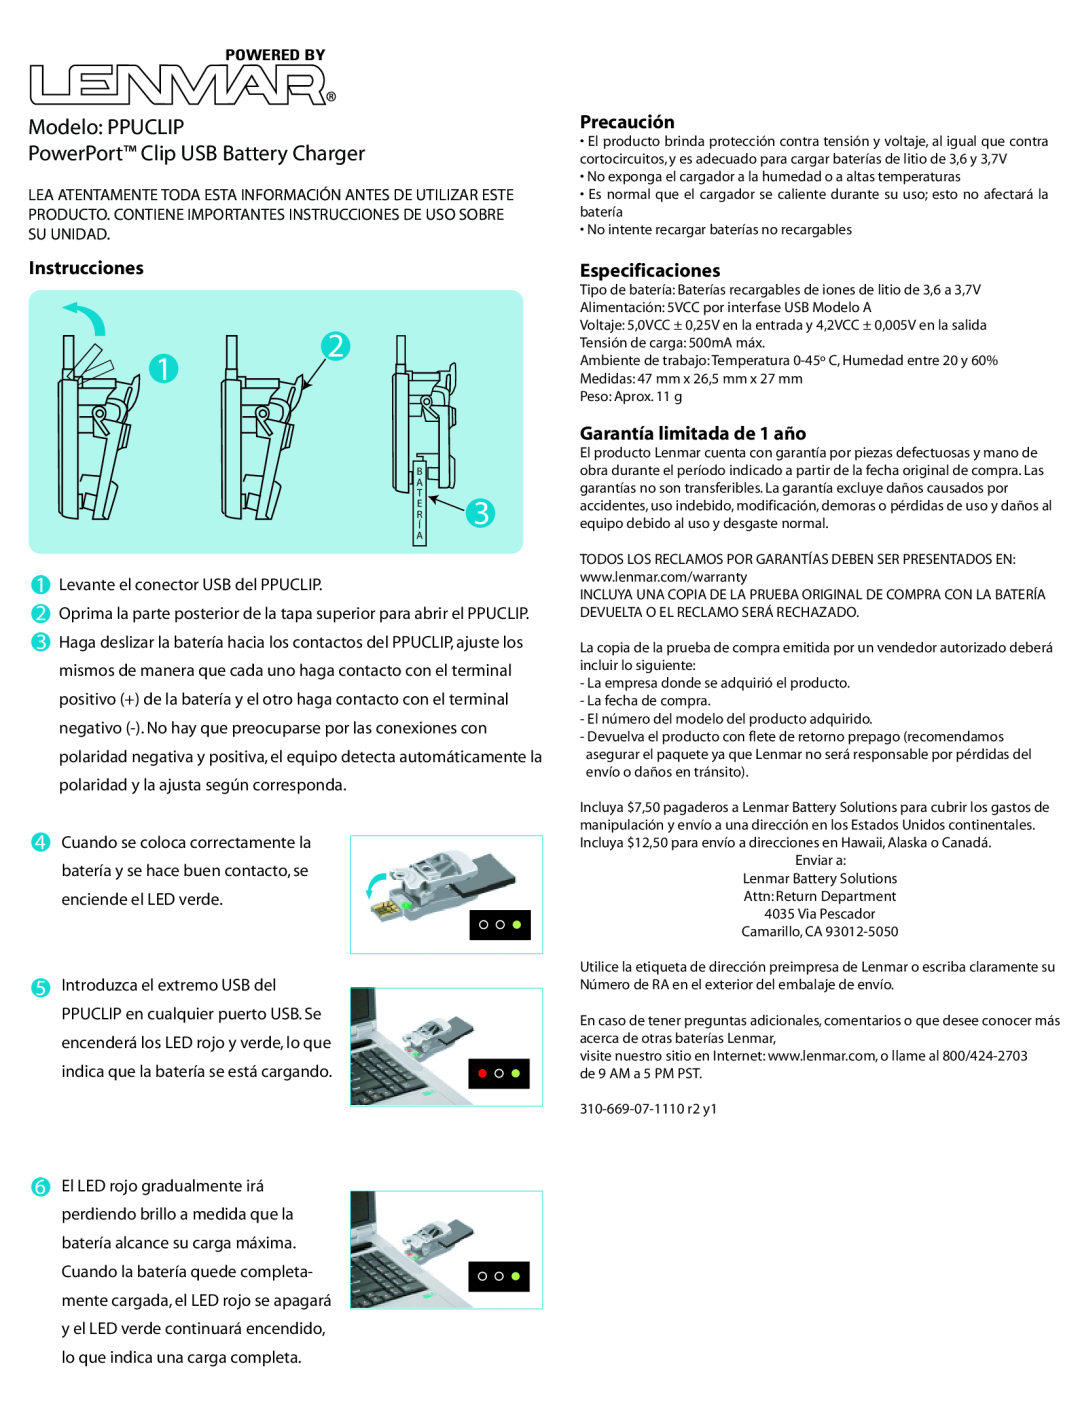 Lenmar Enterprises Modelo PPUCLIP PowerPort Clip USB Battery Charger, Precaución, Instrucciones, Especificaciones 